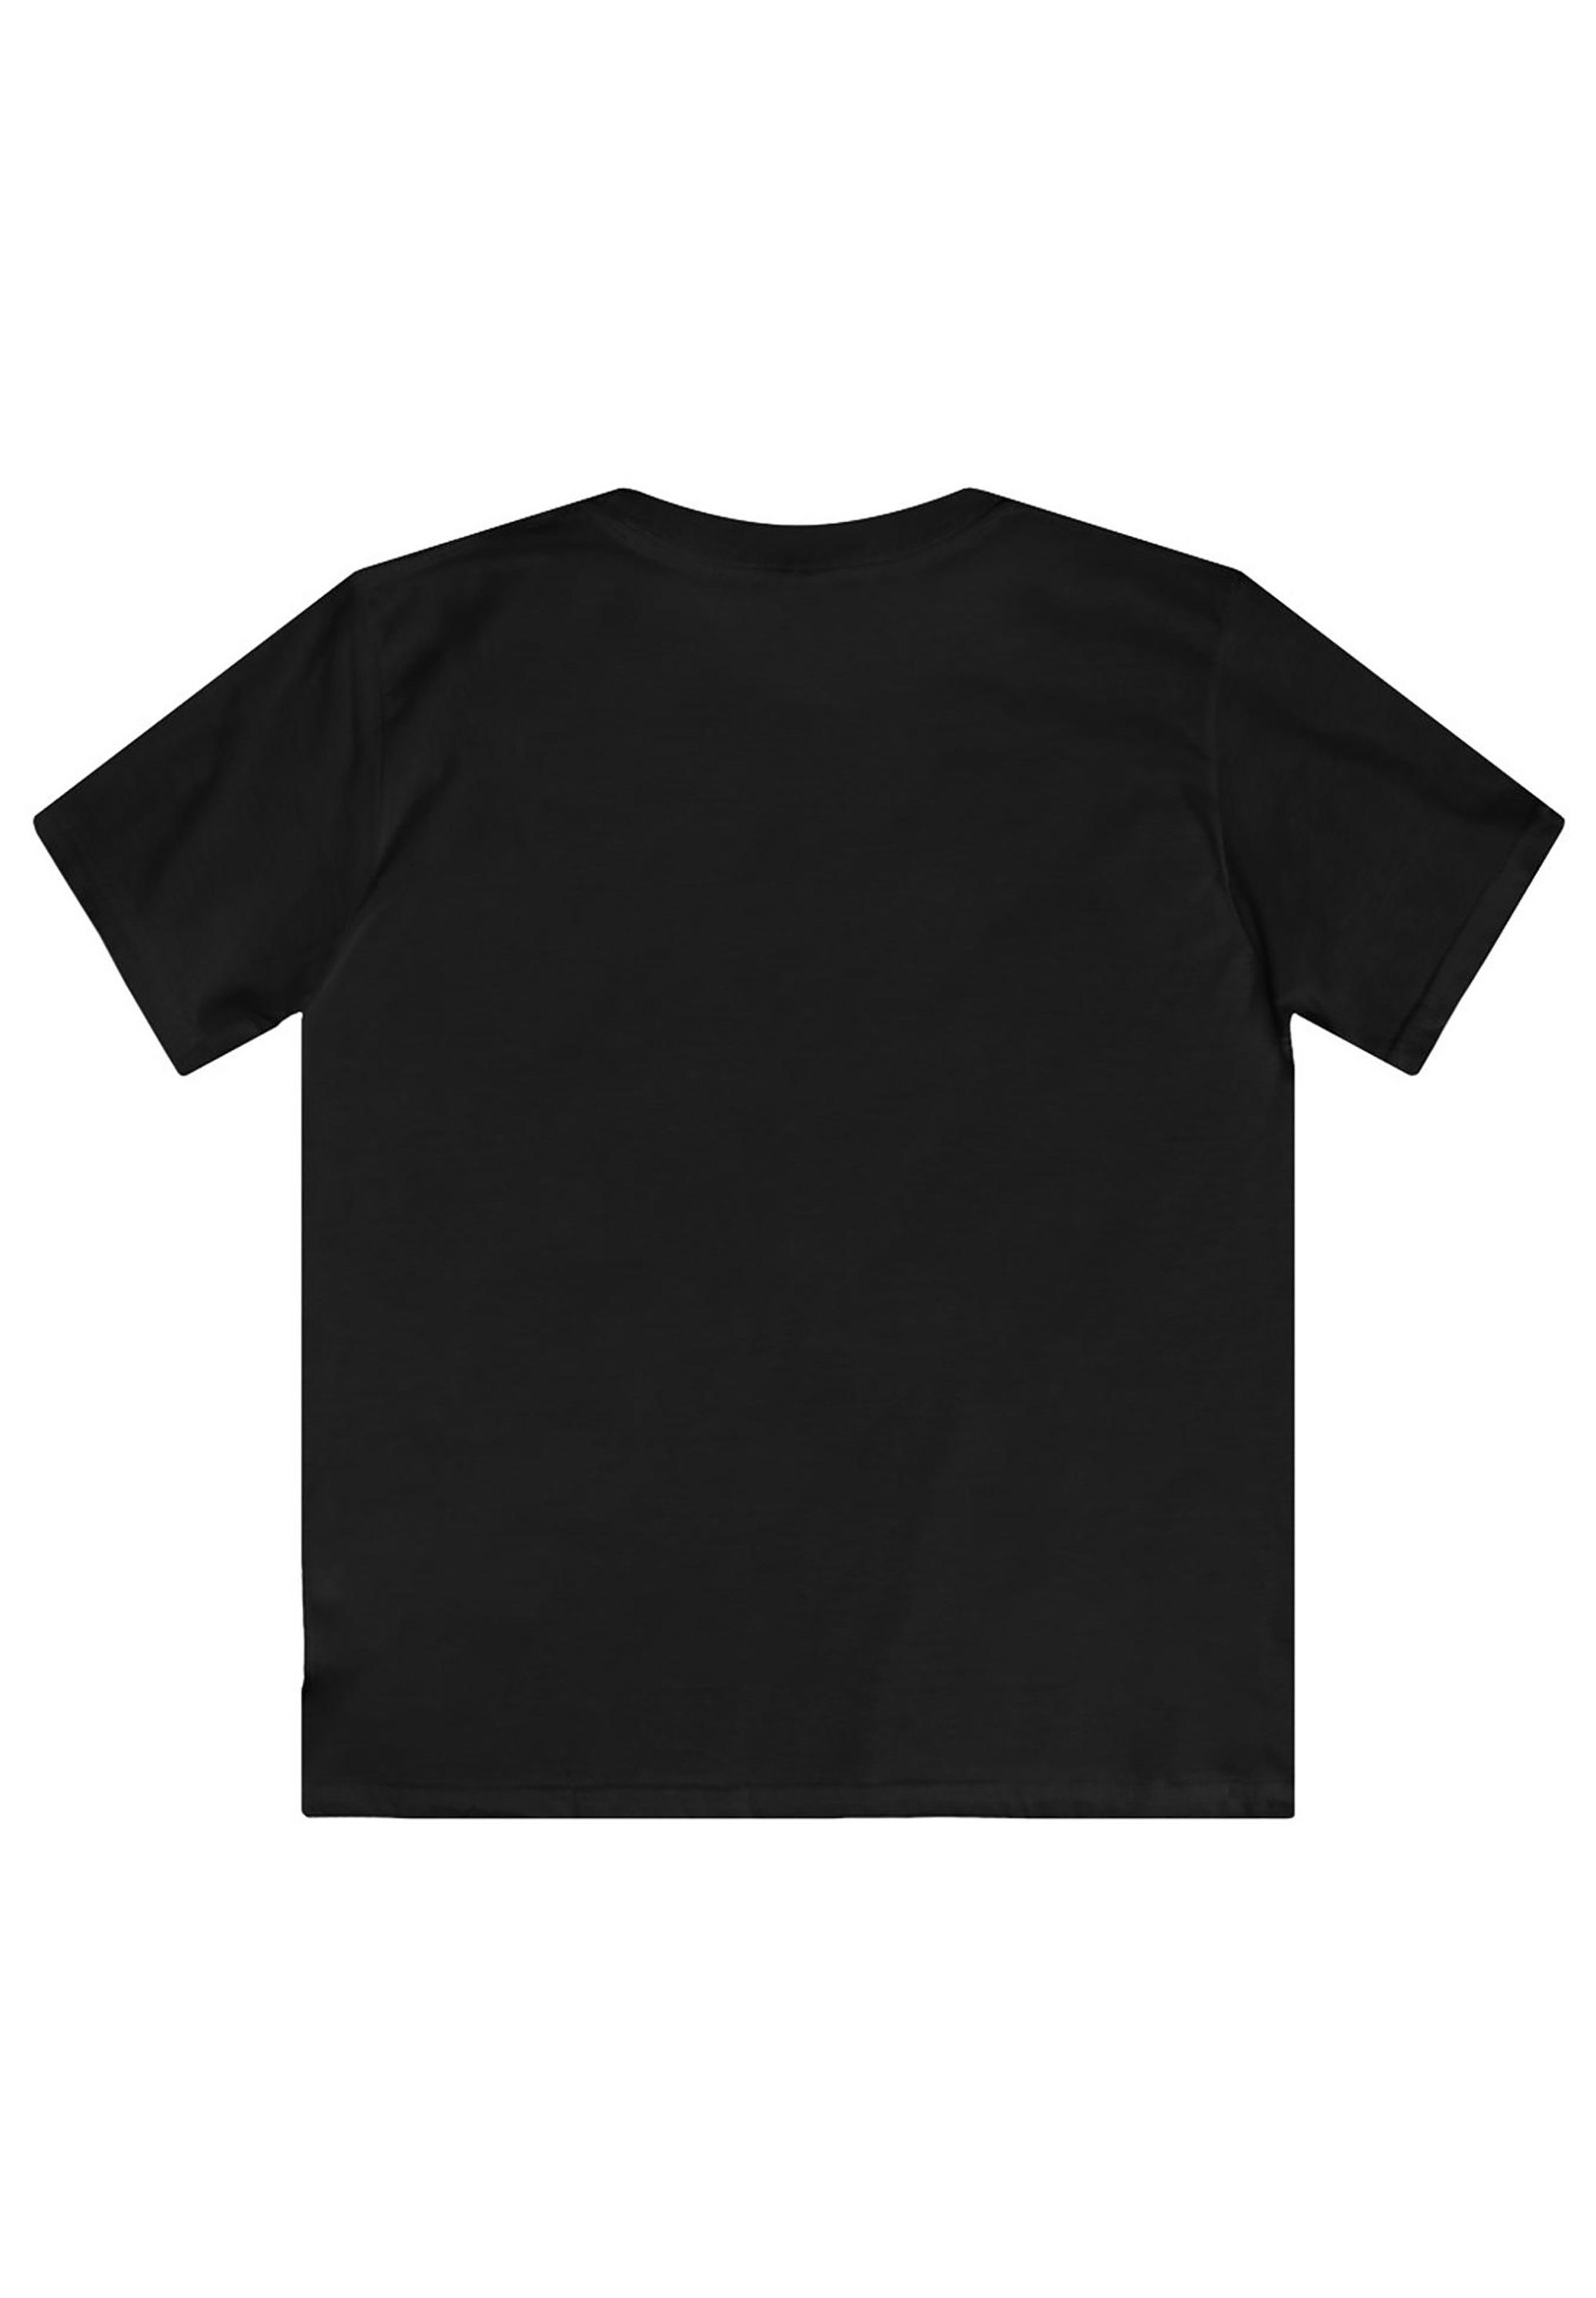 F4NT4STIC T-Shirt ACDC Rock or & Print Herren Bust für Kinder